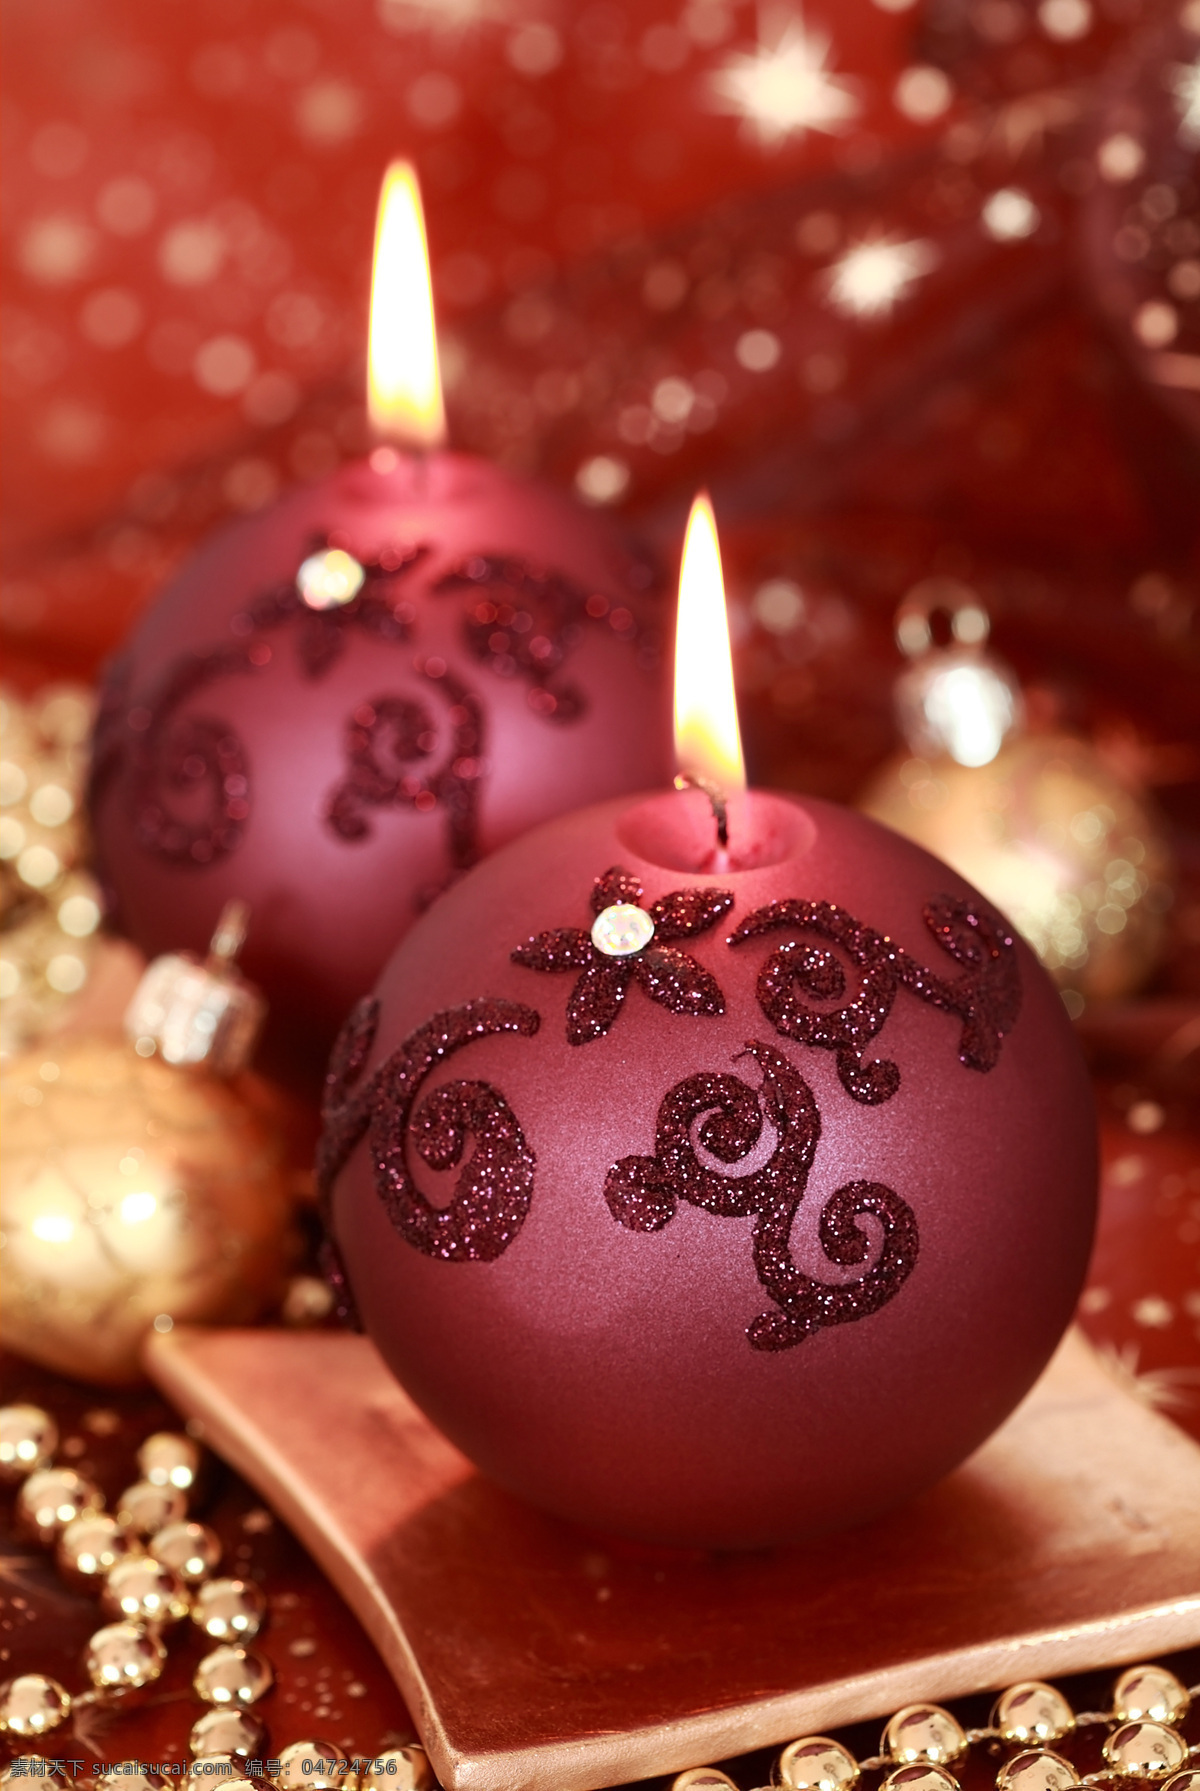 圣诞 蜡烛 盘子 火苗 梦幻背景 圣诞节 圣诞节素材 装饰 挂件 节日庆典 生活百科